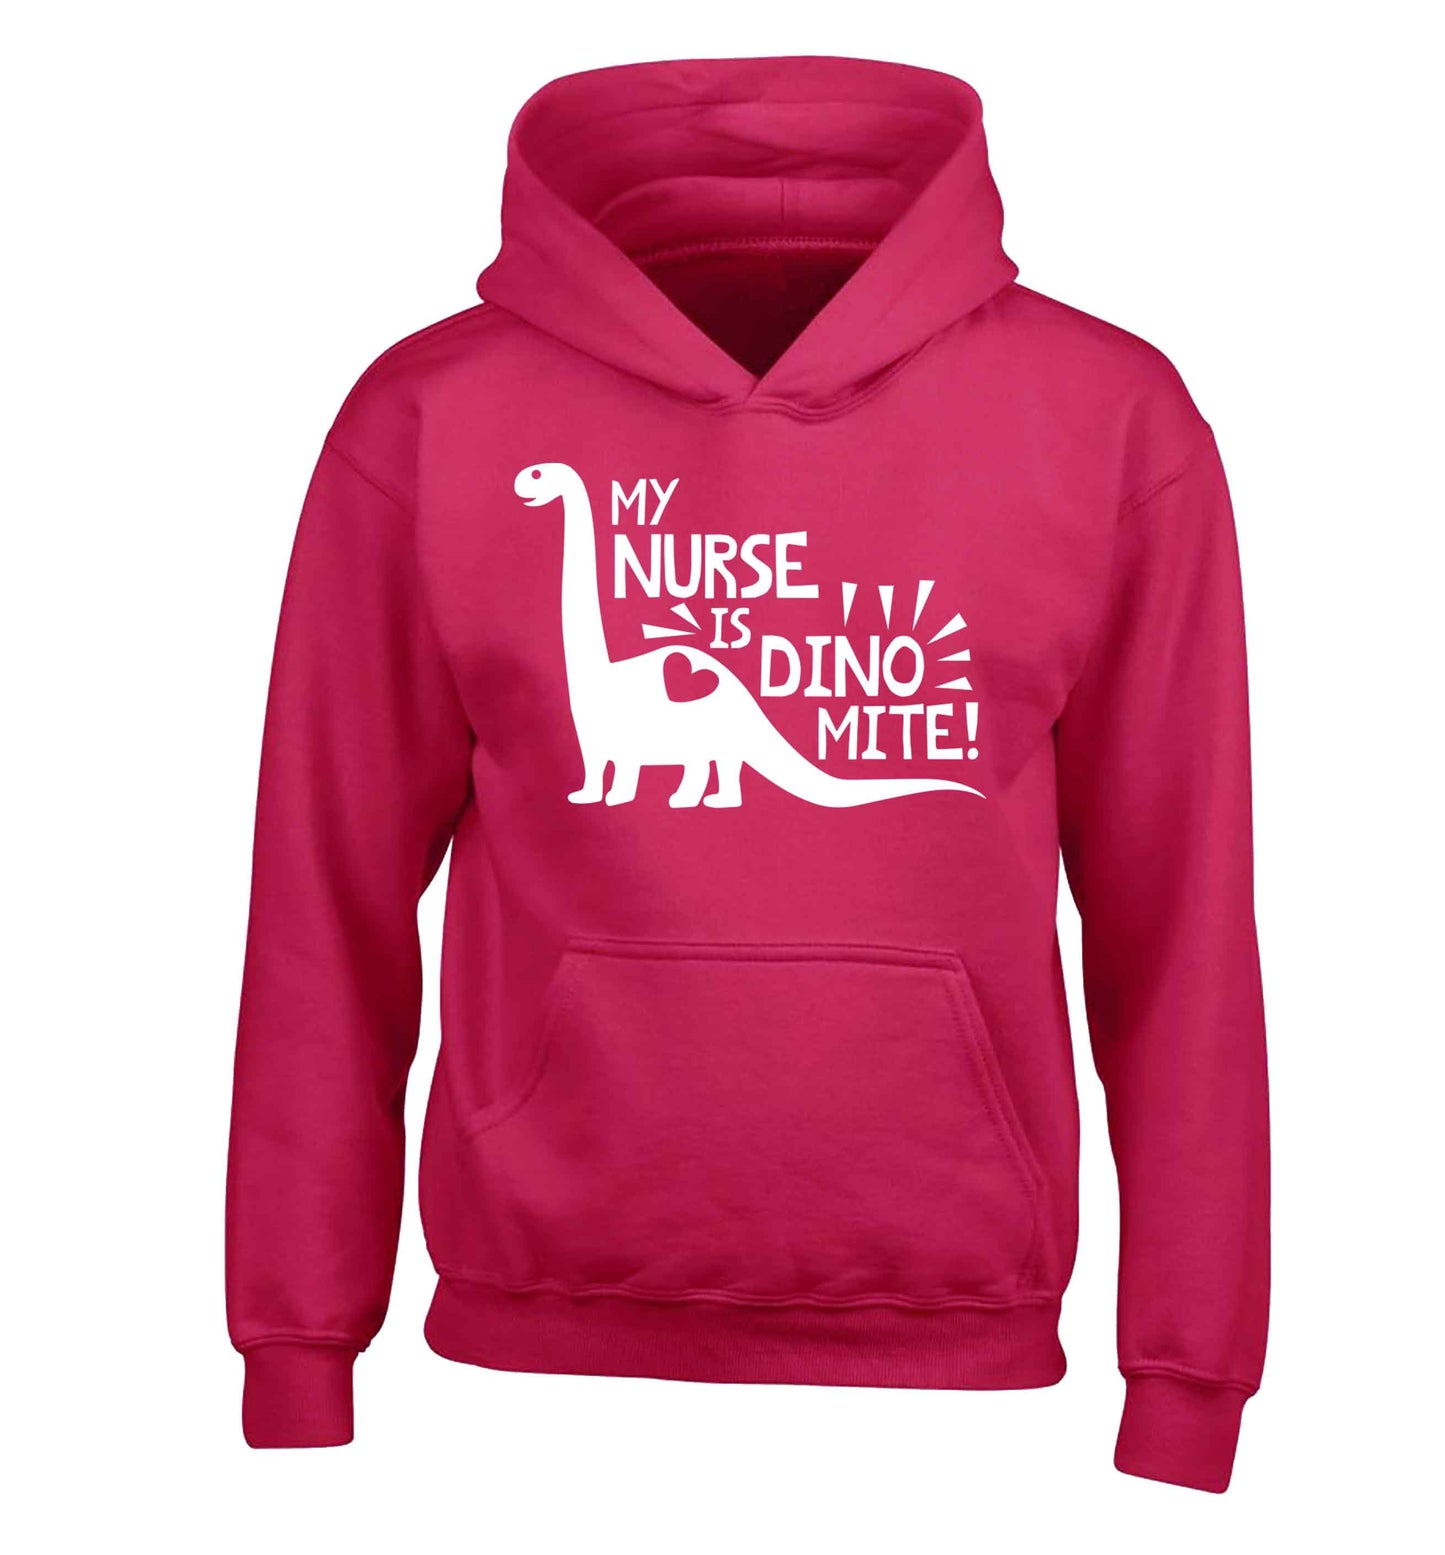 My nurse is dinomite! children's pink hoodie 12-13 Years